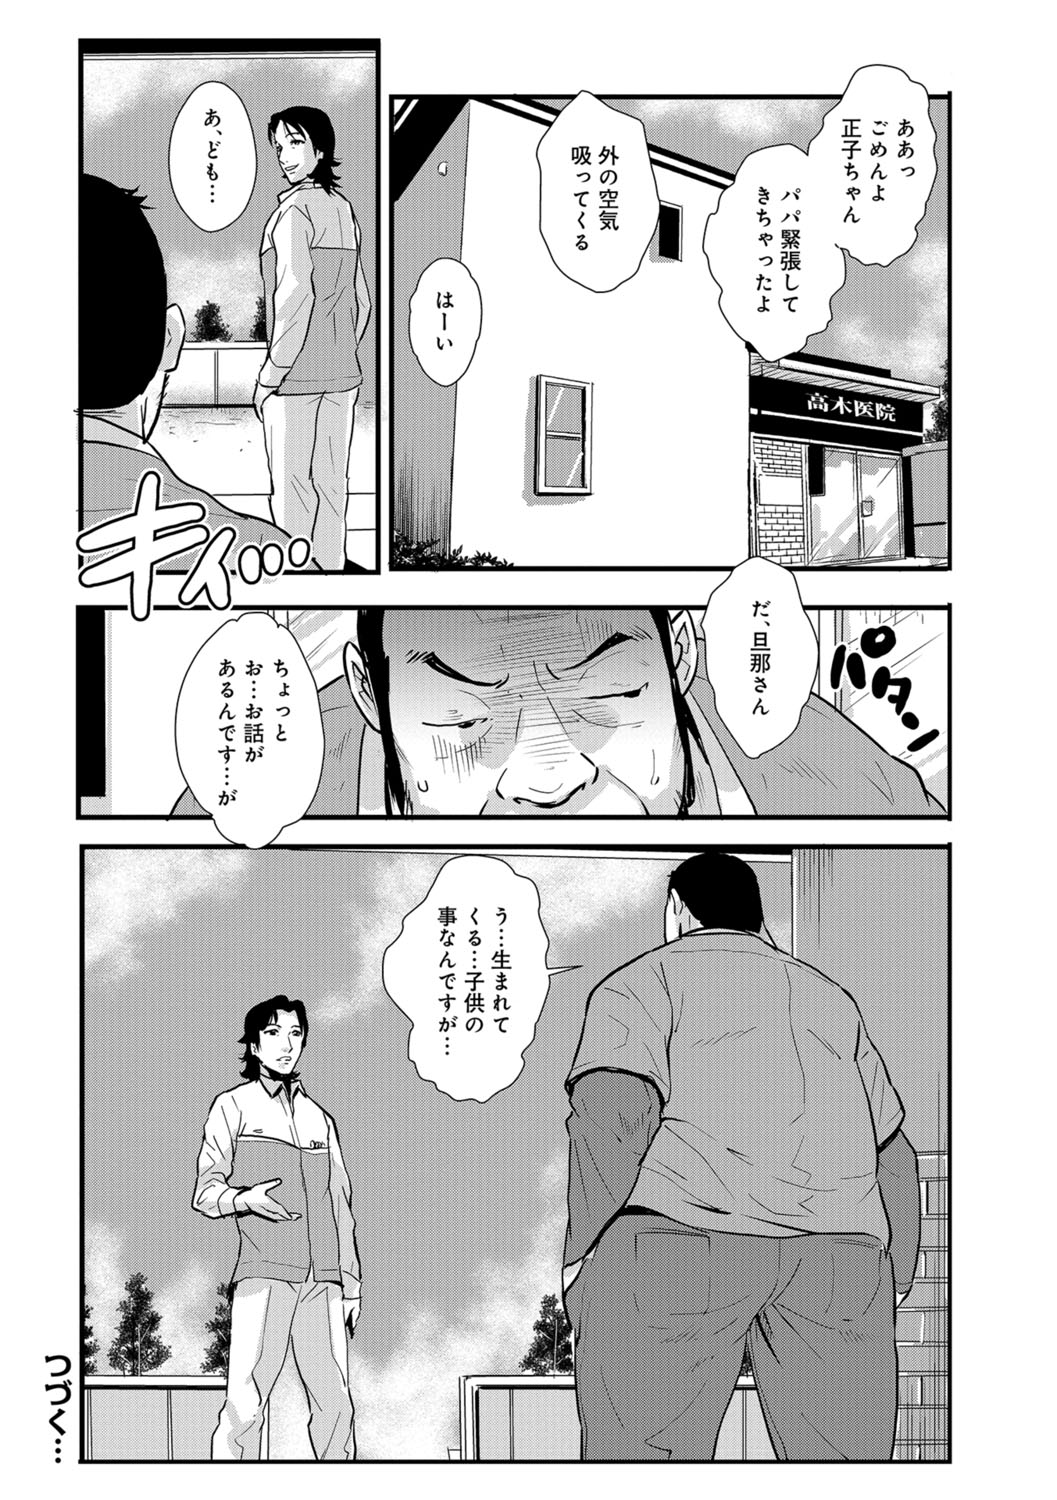 [格闘王国] 家庭妻艶 Vol.3